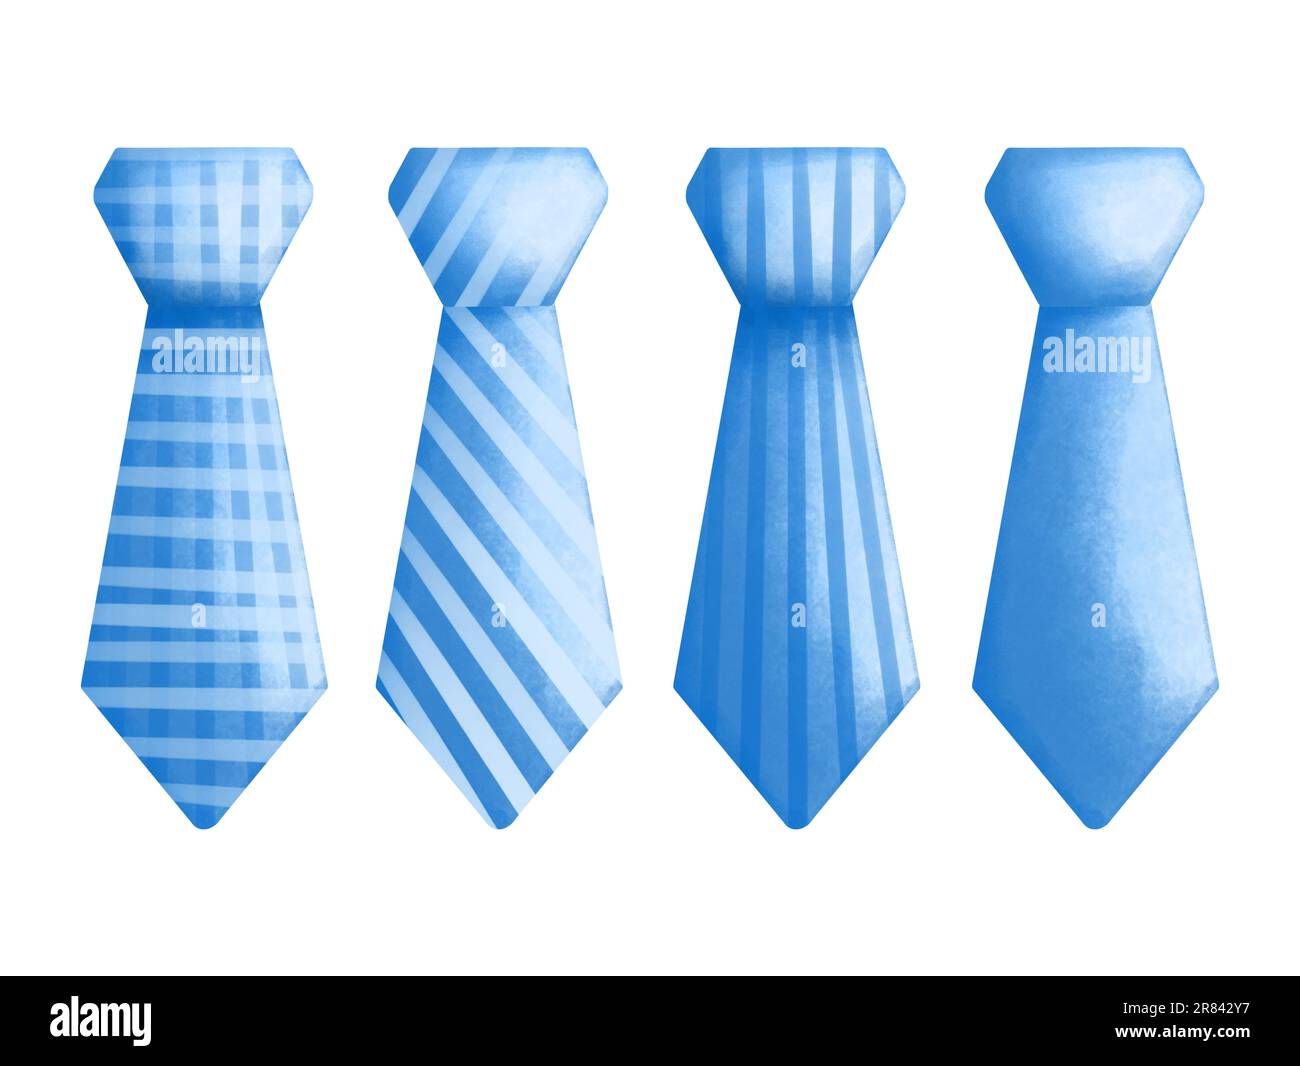 blue tie clipart